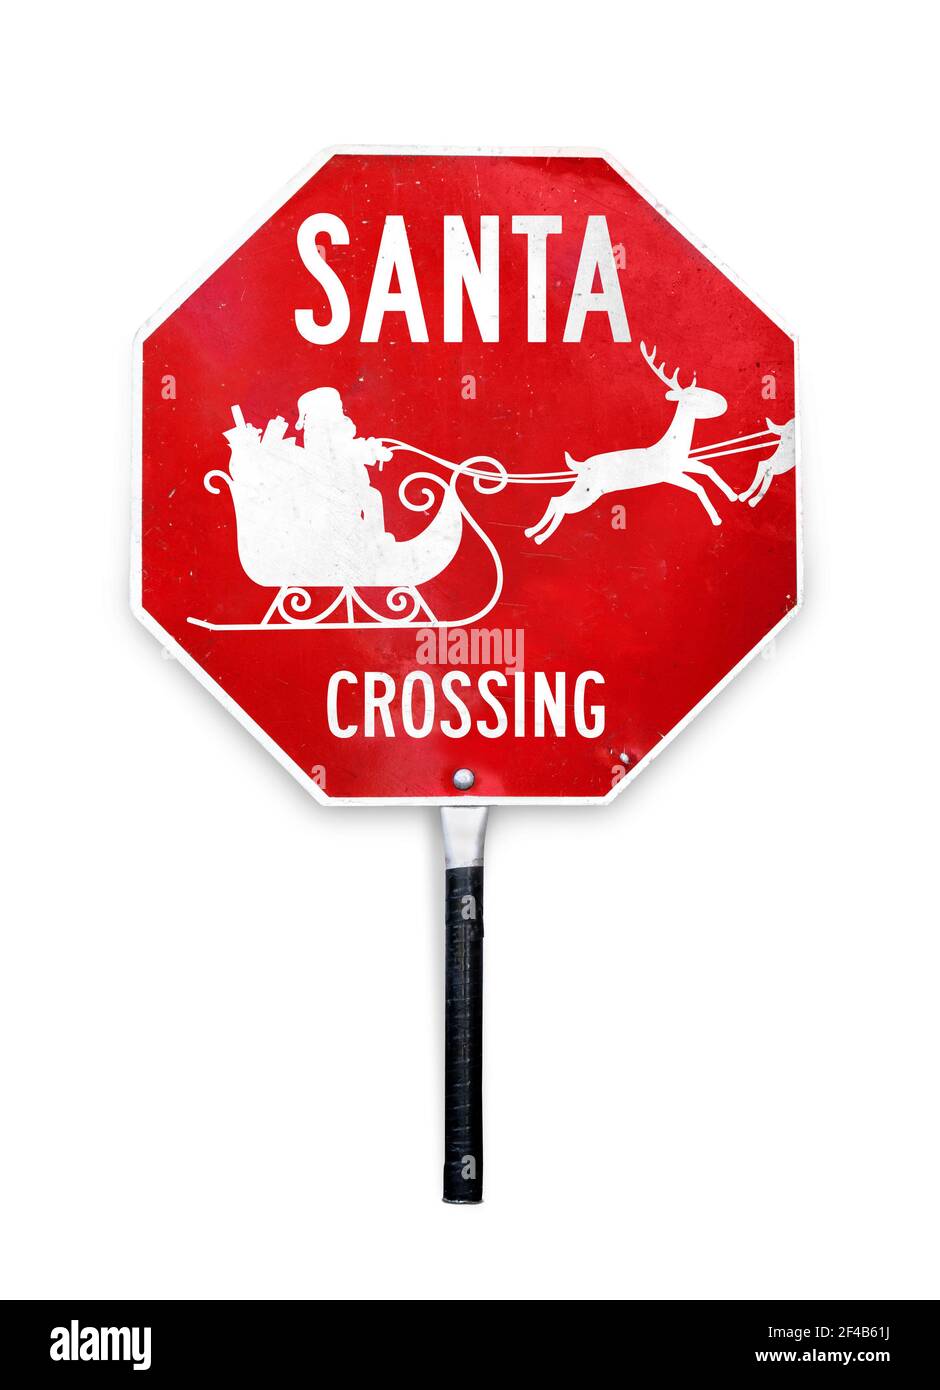 Santa Kreuzung Schild mit Schlitten und Rentiere. Hand-Held Weihnachten Themen Stop-Schild für die Verkehrskontrolle durch Überqueren Wachen verwendet. Stockfoto